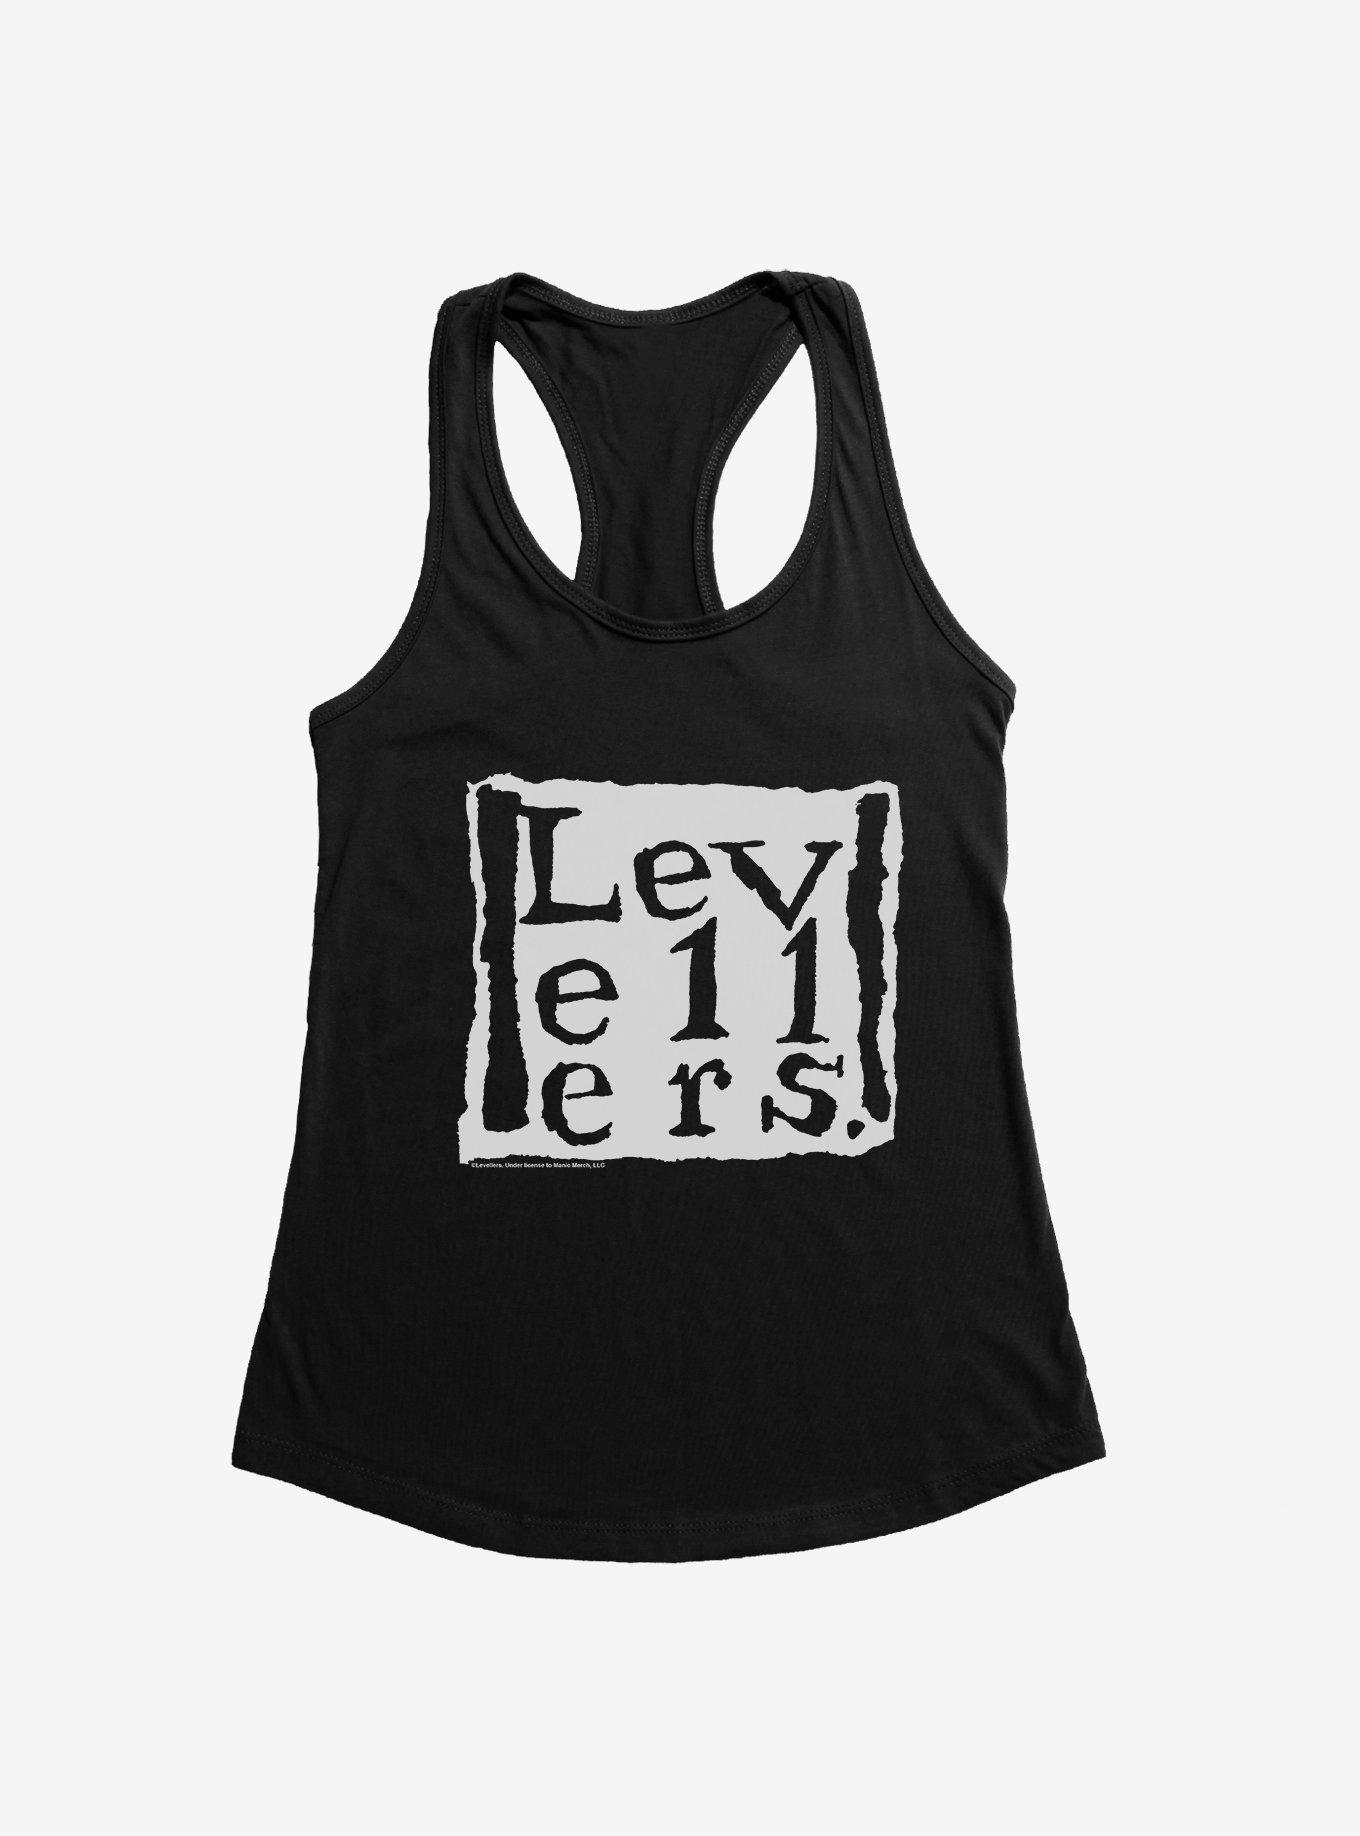 Levellers Band Logo Girls Tank, BLACK, hi-res